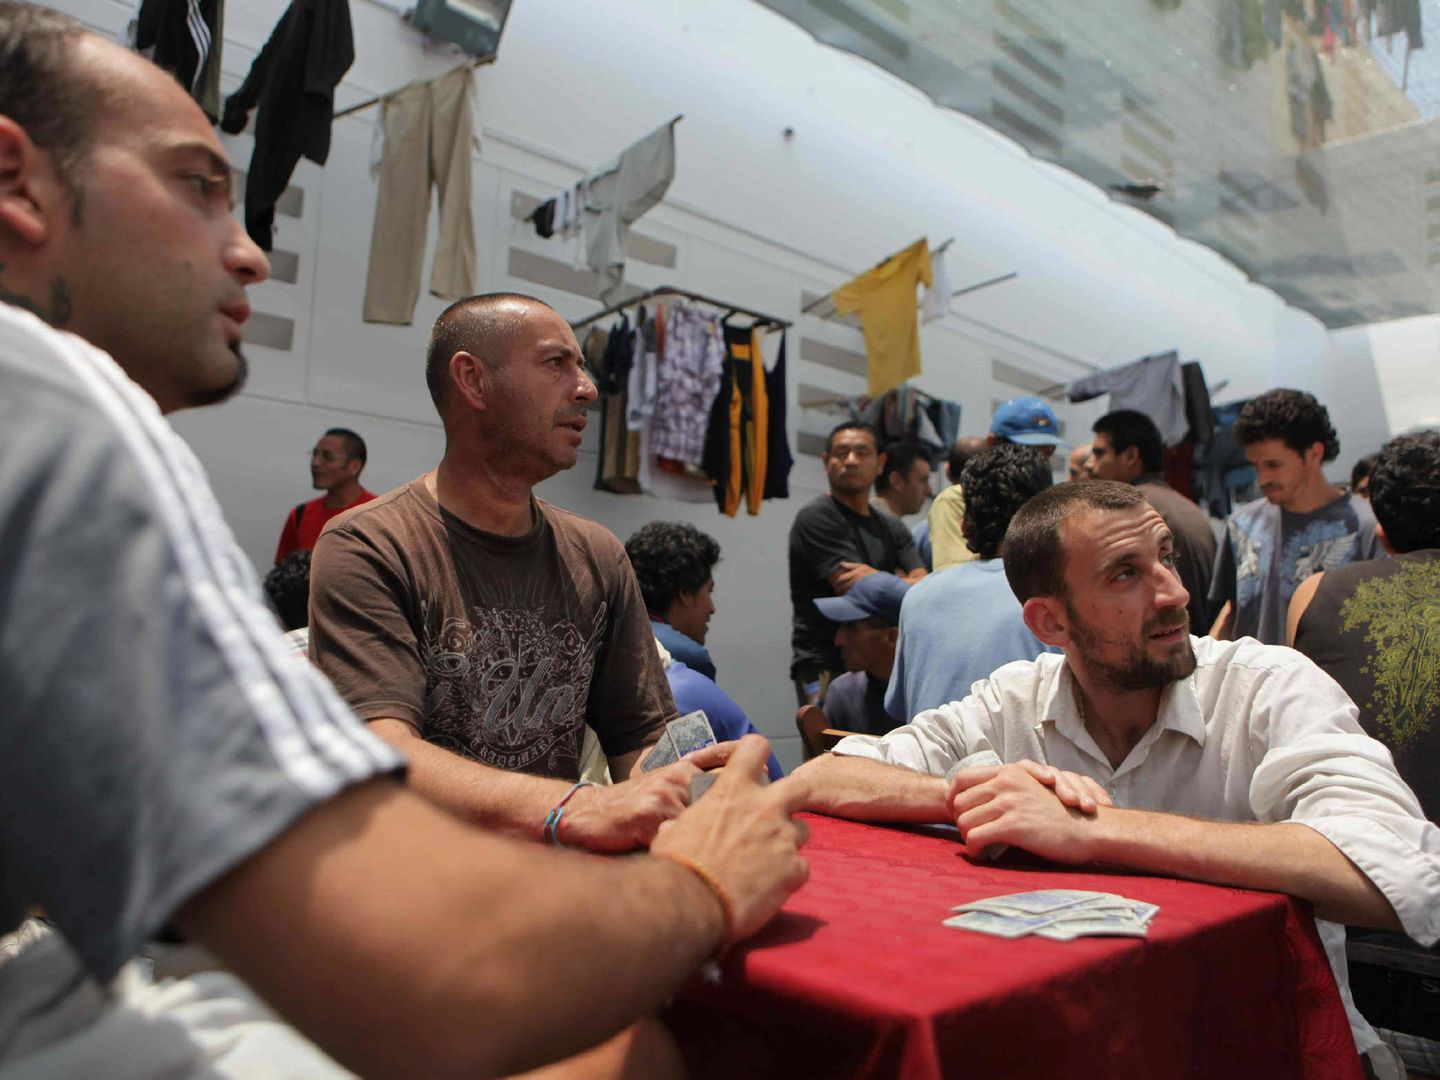 Un grupo de presos españoles juegan cartas en una imagen de 2009. (Paolo Aguilar/EFE)